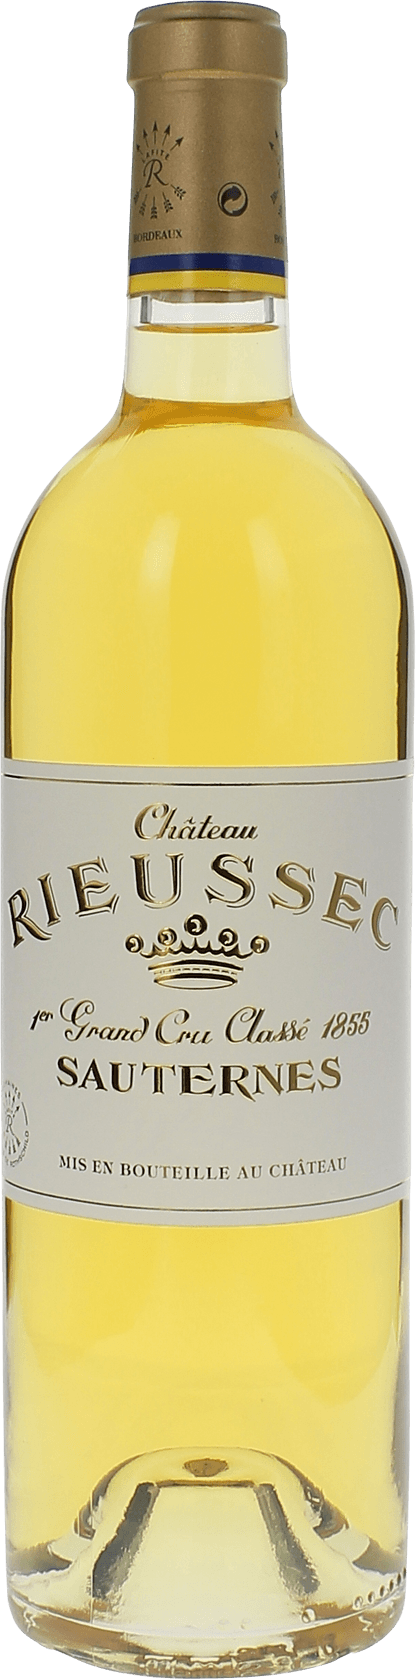 Rieussec 2015 1er cru Sauternes, Bordeaux blanc